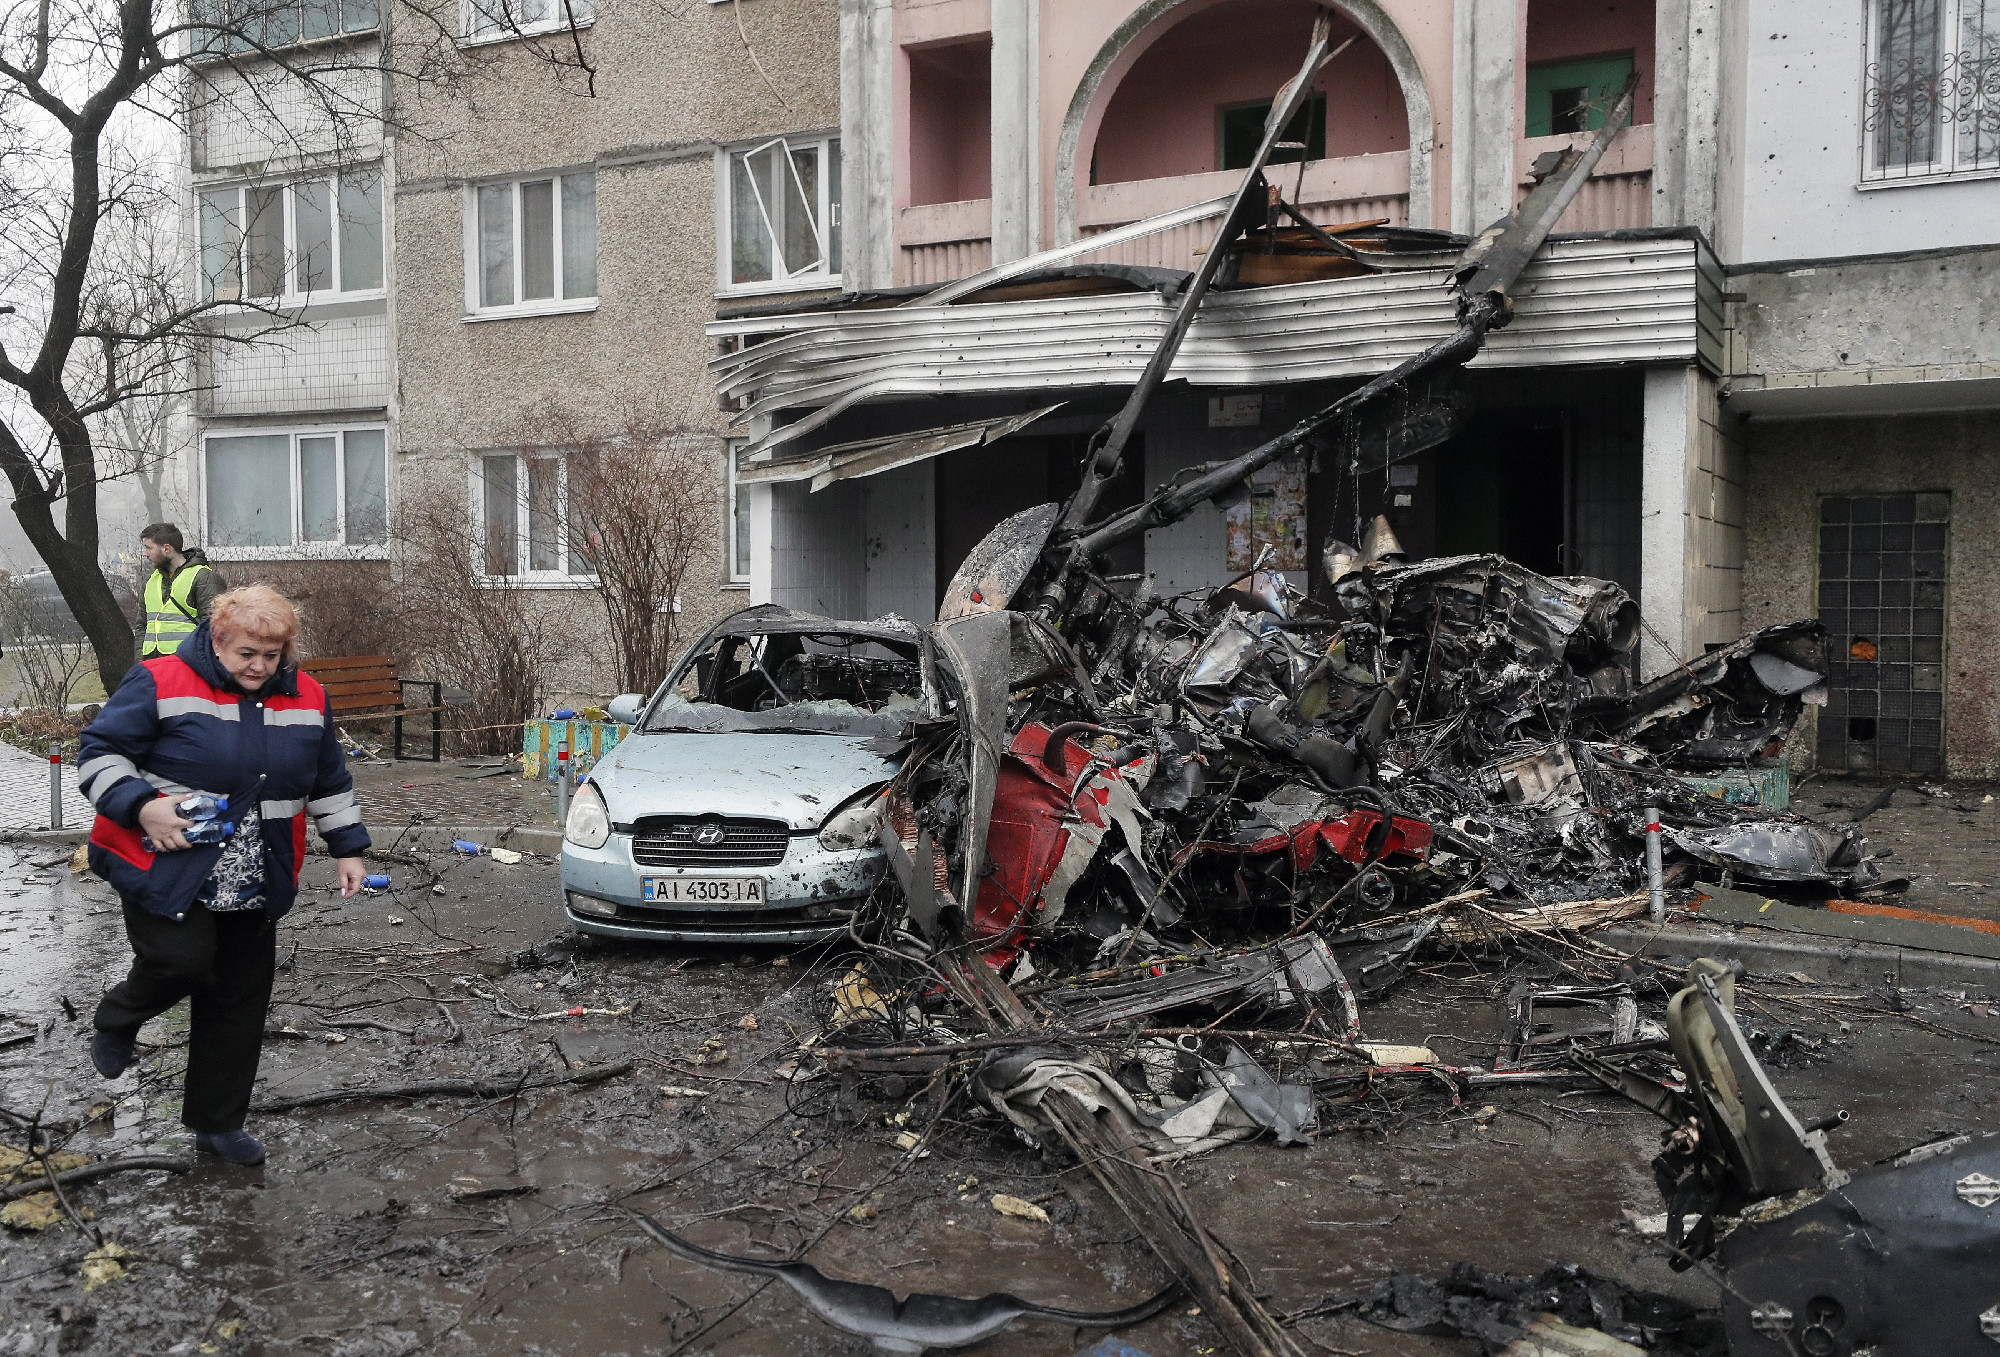 Megvan, ki veszi át a helikopter-balesetben meghalt ukrán belügyminiszter feladatait